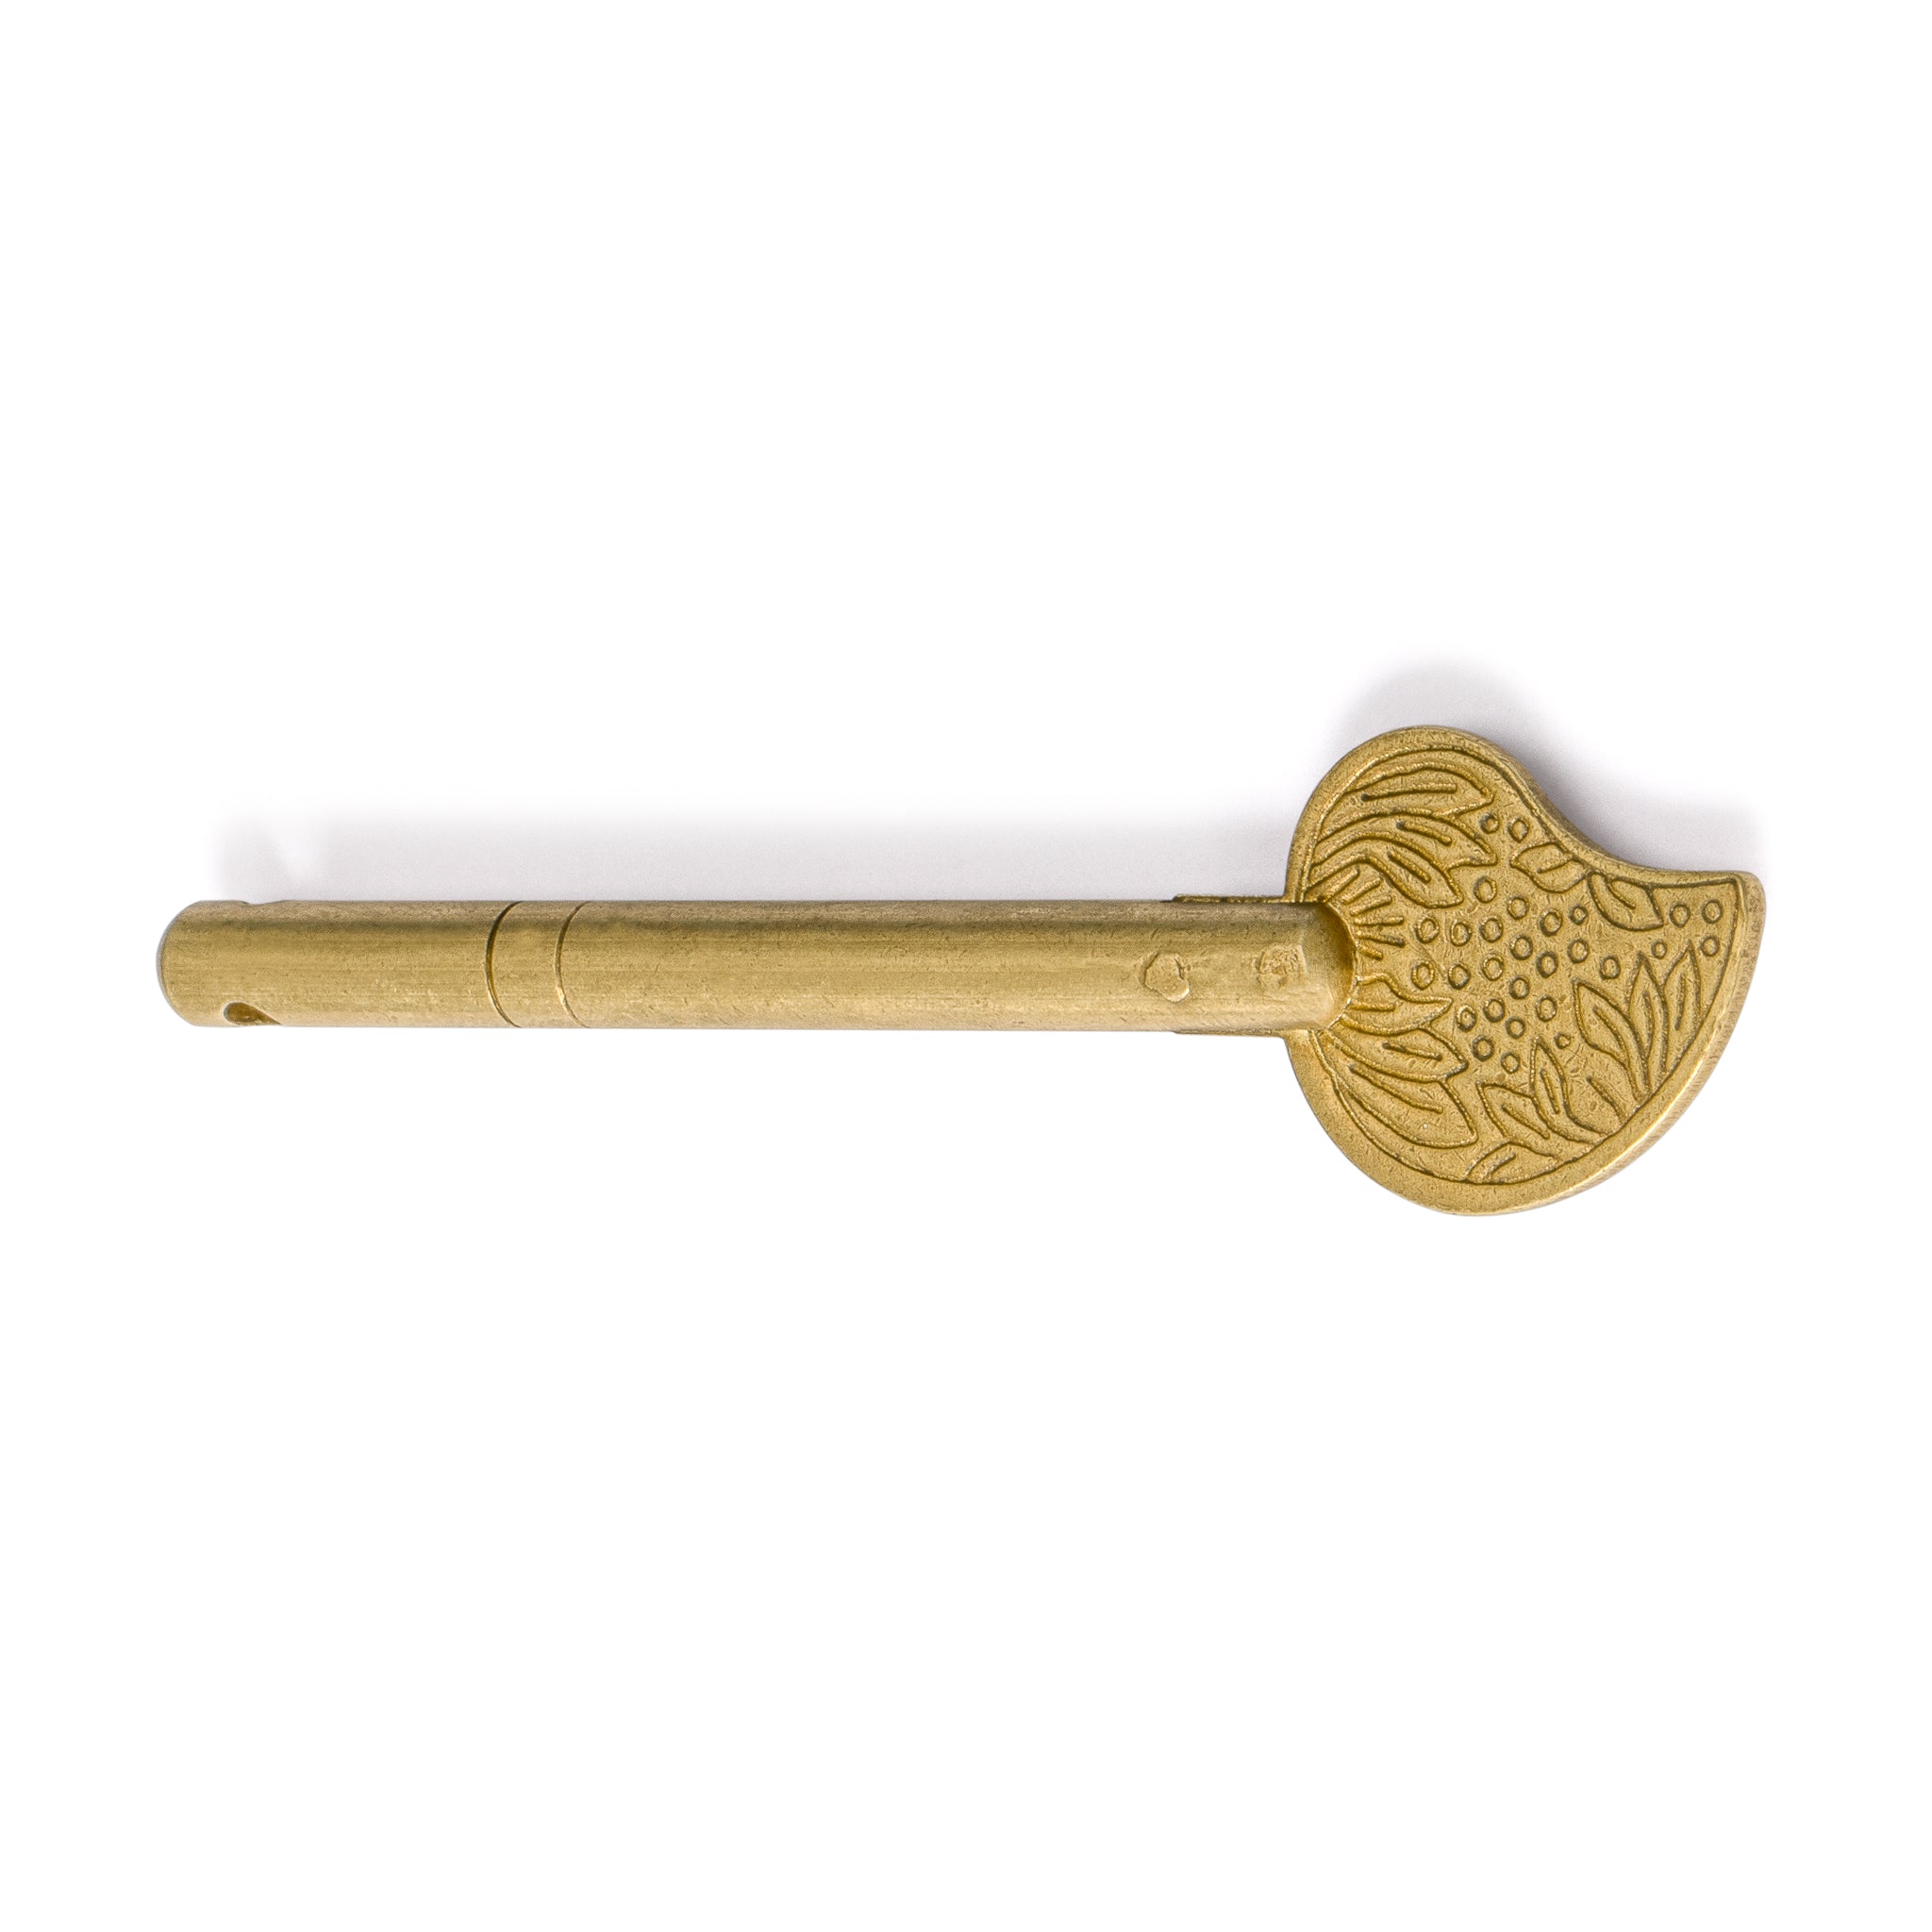 Bird Tail Key Pin 3.3" - Set of 2-Chinese Brass Hardware